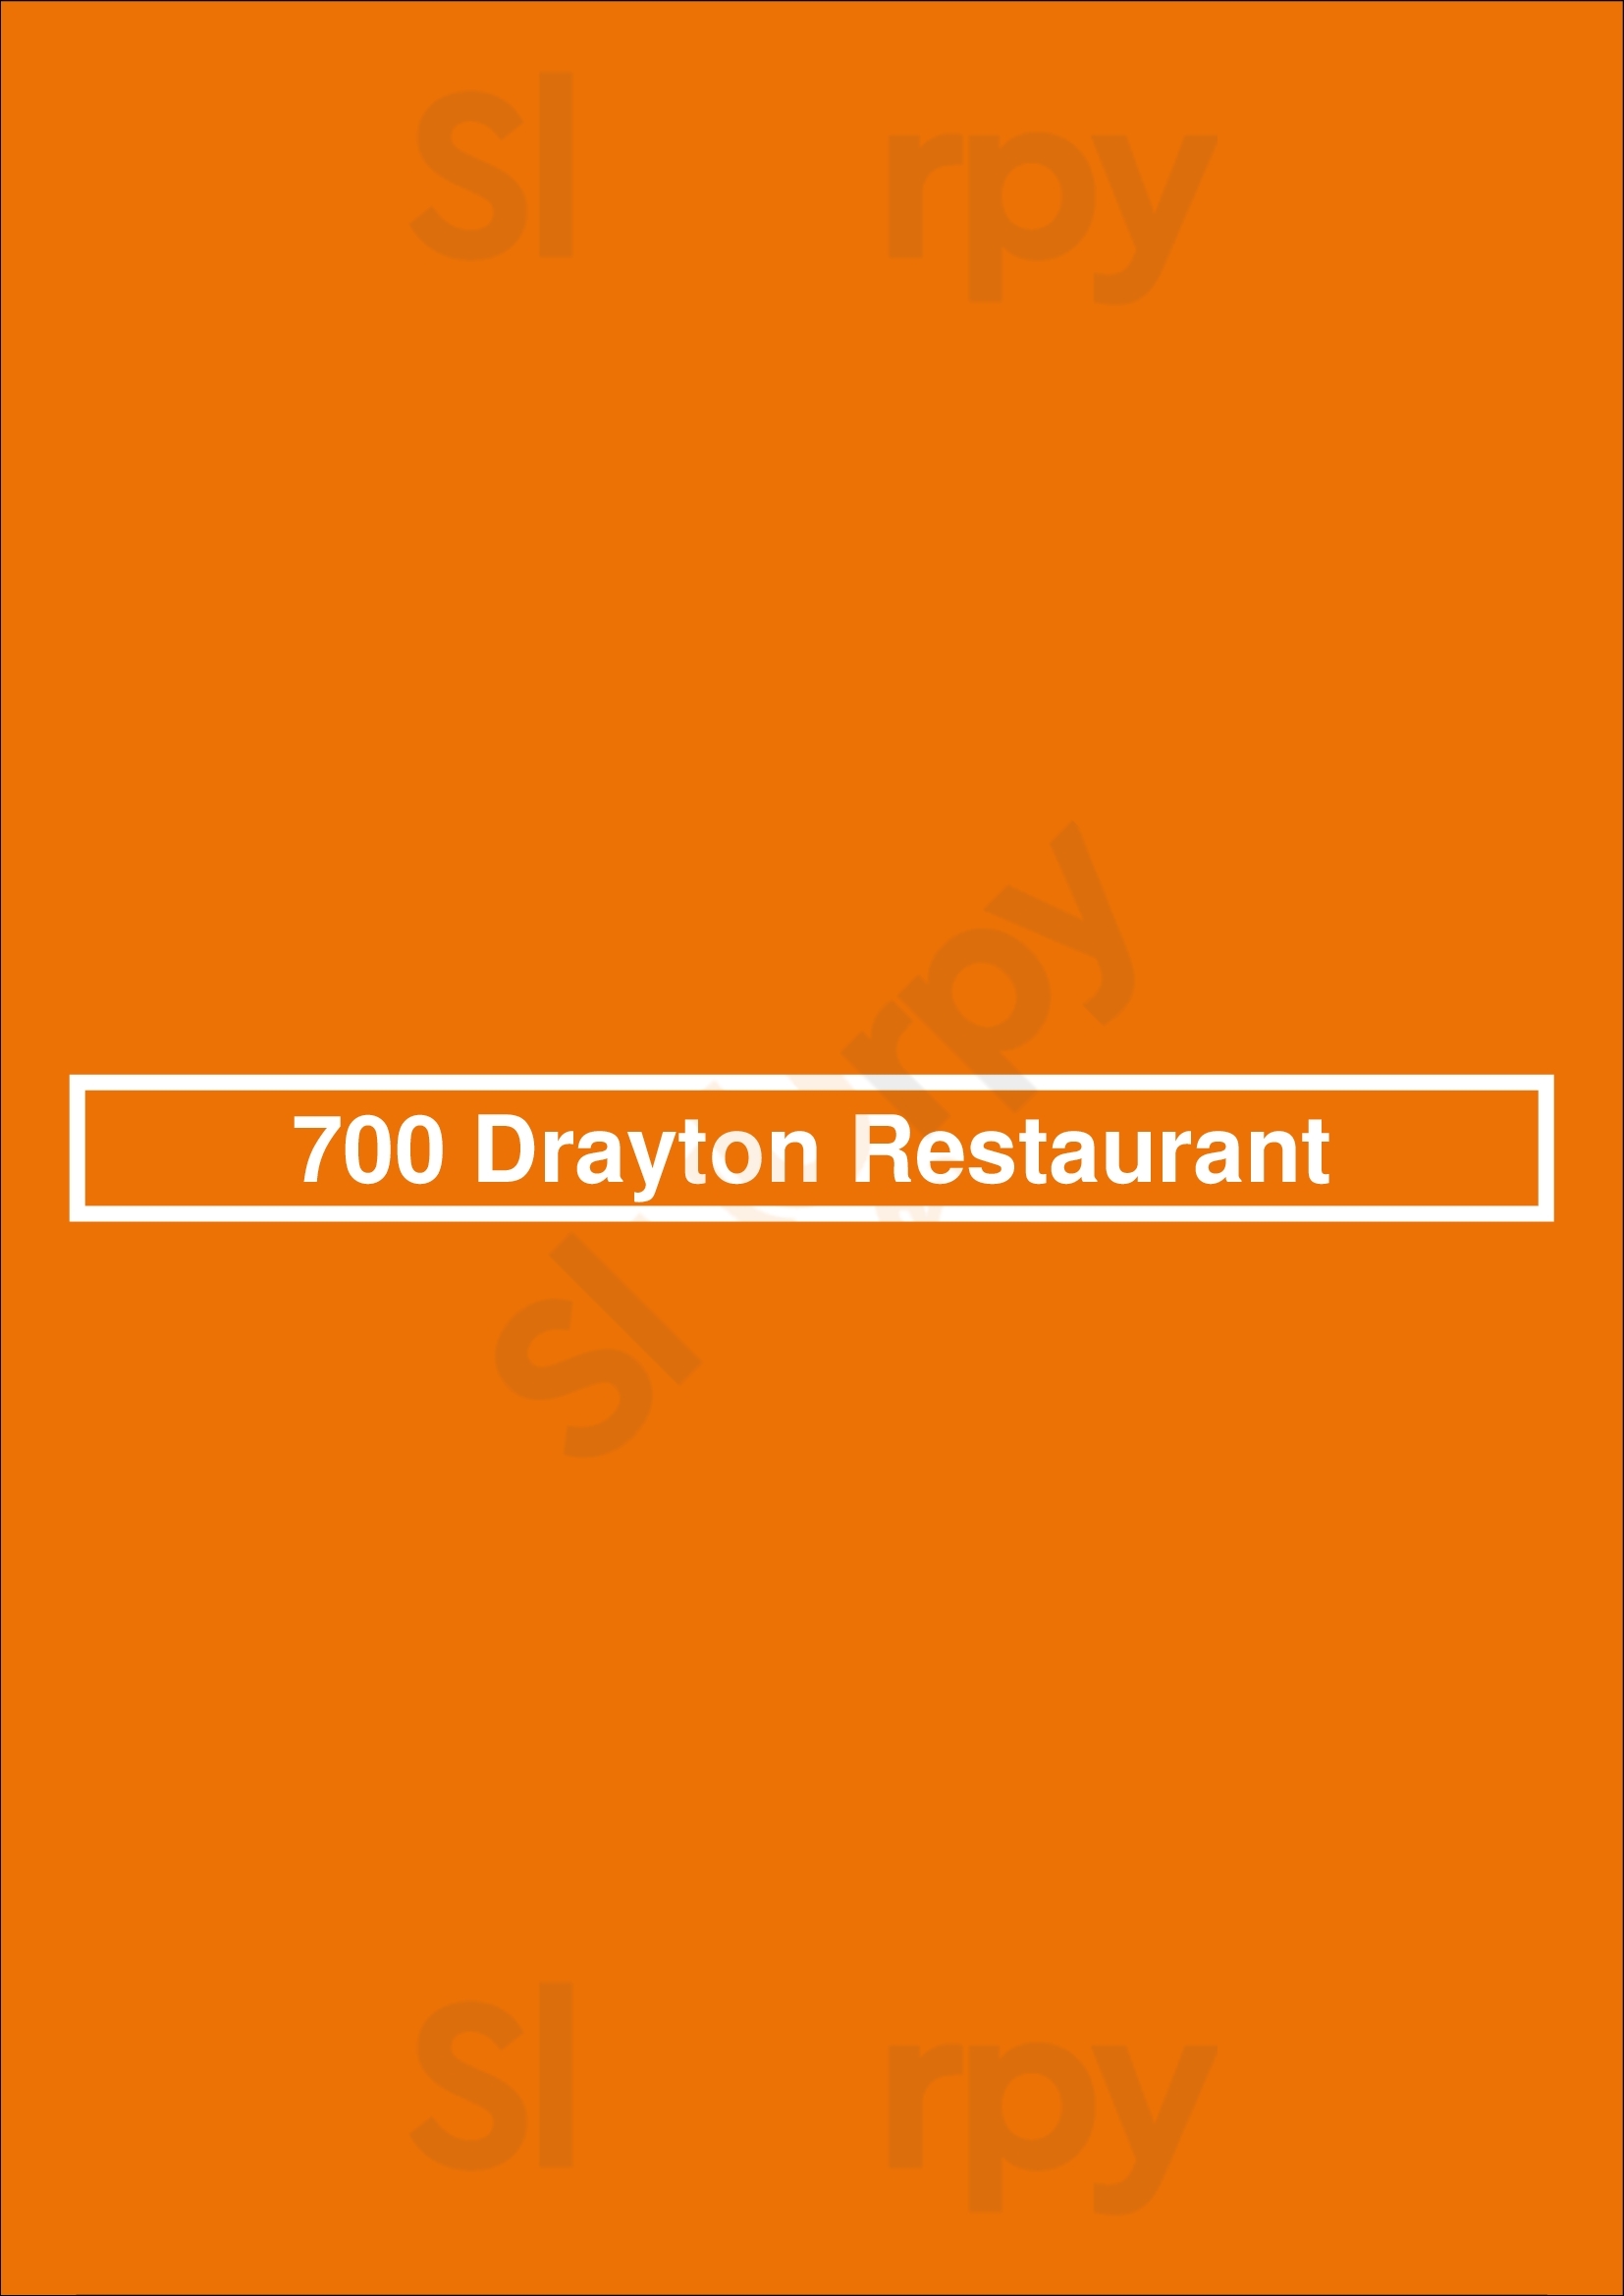 700 Drayton Restaurant Savannah Menu - 1